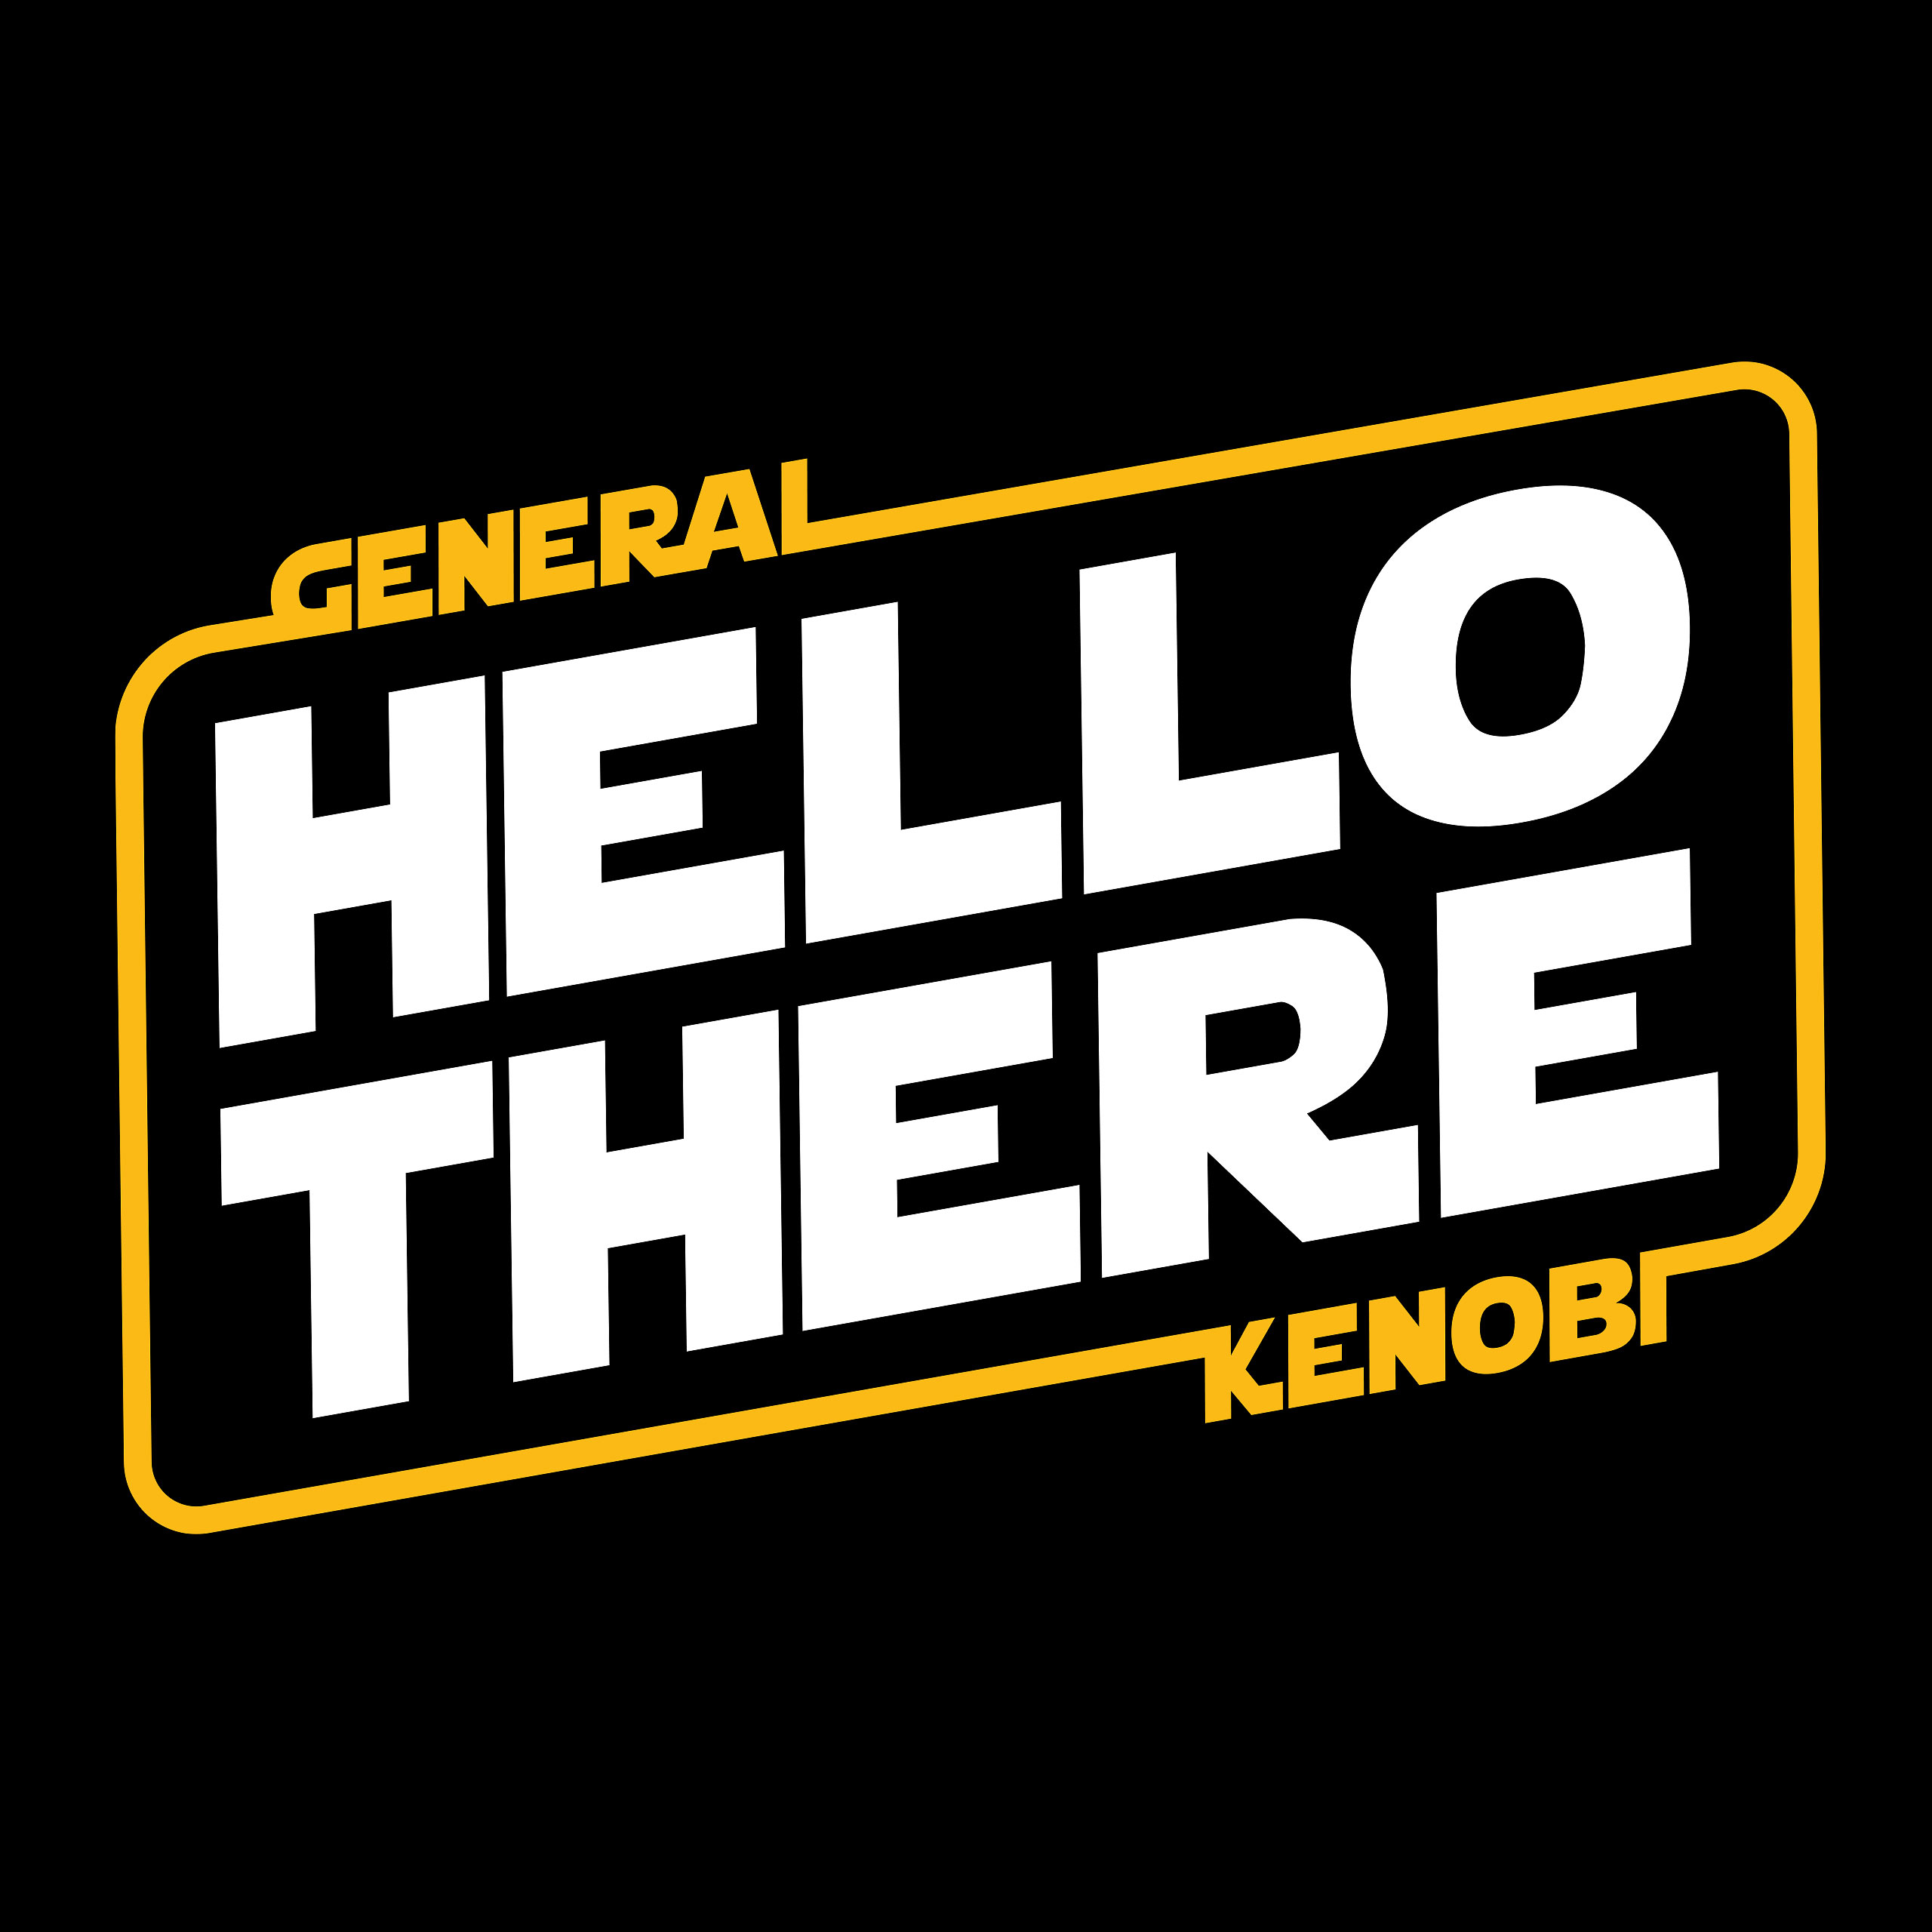 General Kenobi Hello There T-Shirt für Star Wars Fans schwarz